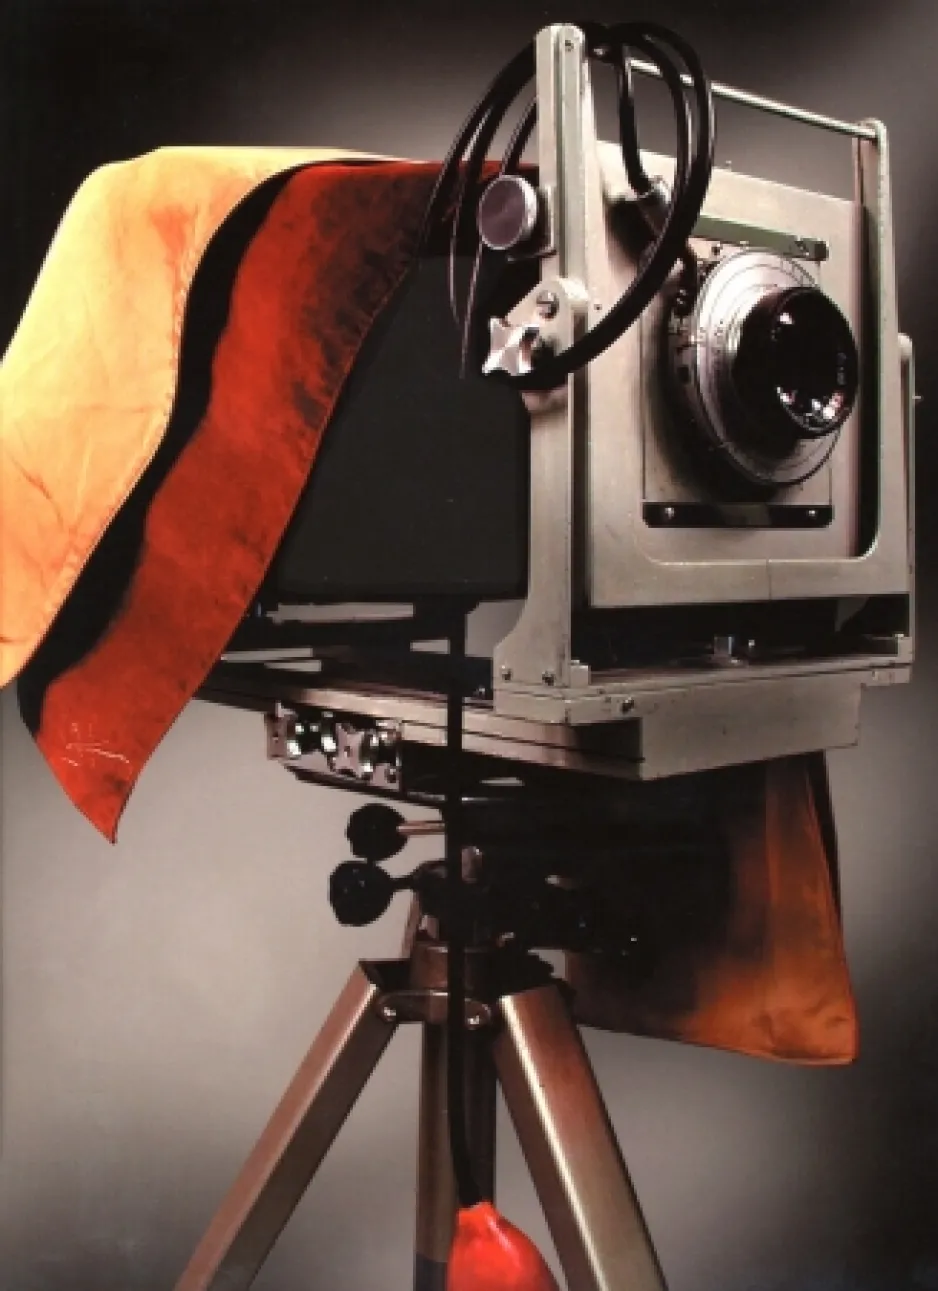 1.	Principal appareil photo de l’éminent photographe portraitiste canadien Yousuf Karsh.